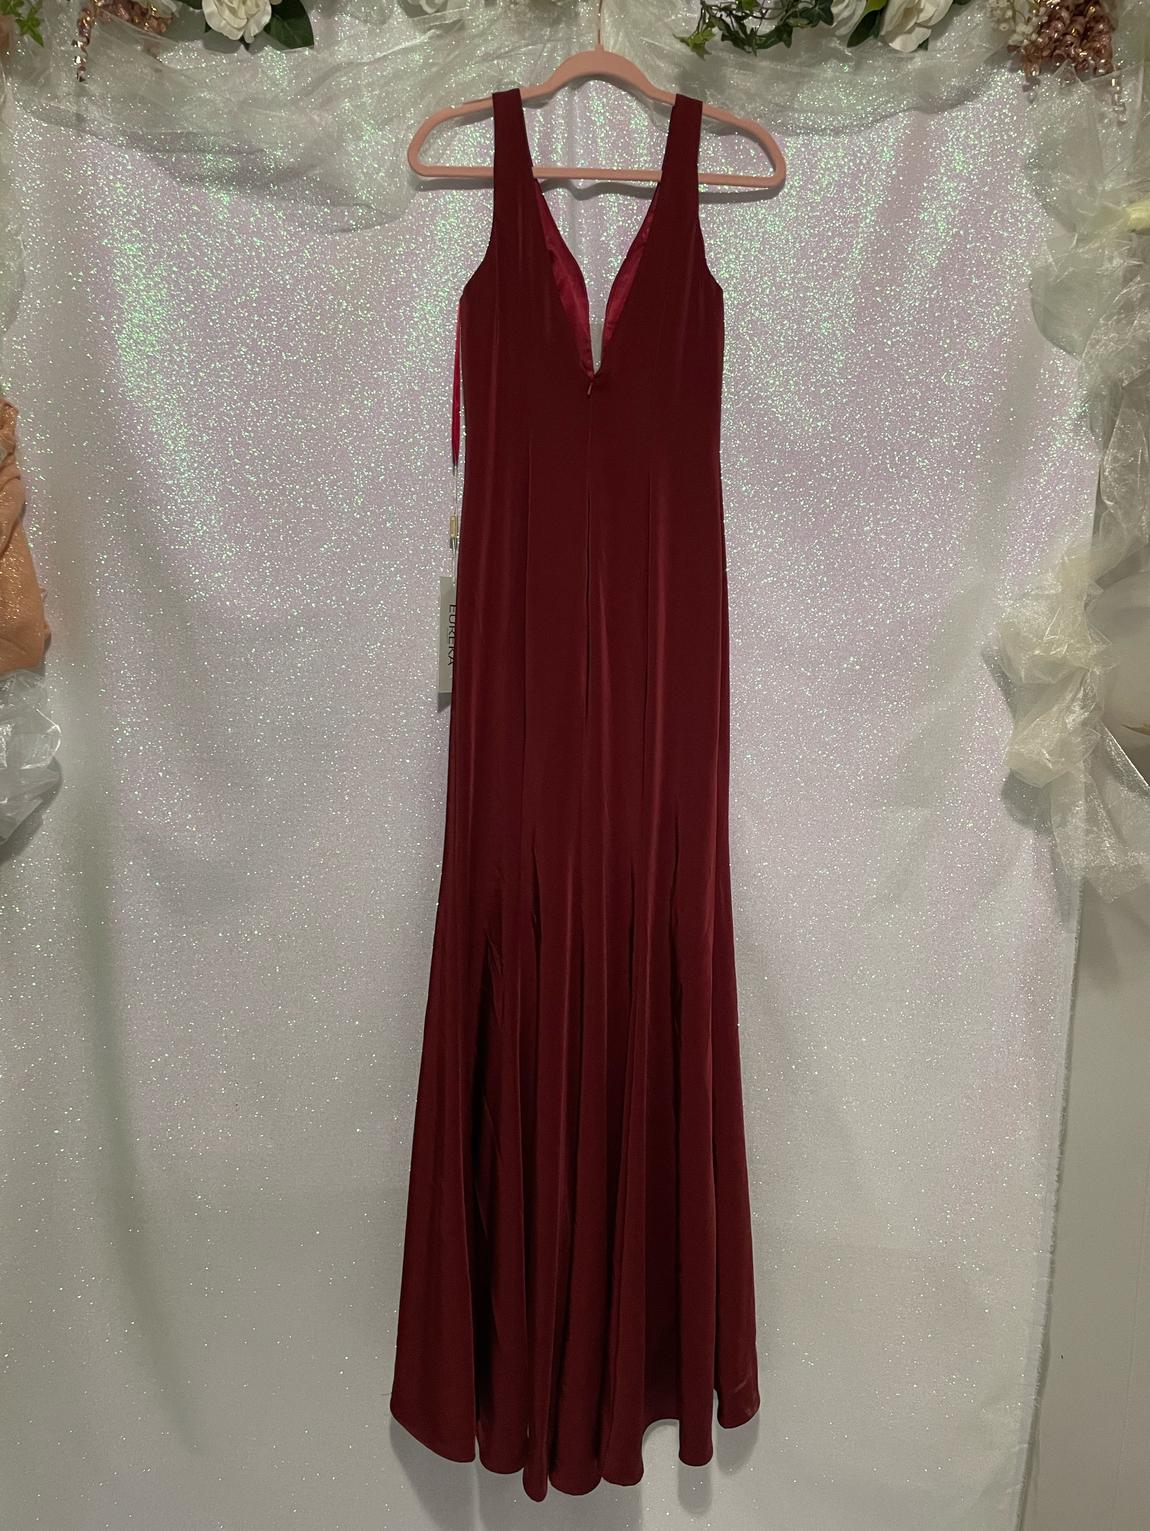 Eureka Size 2 Sheer Red Mermaid Dress on Queenly